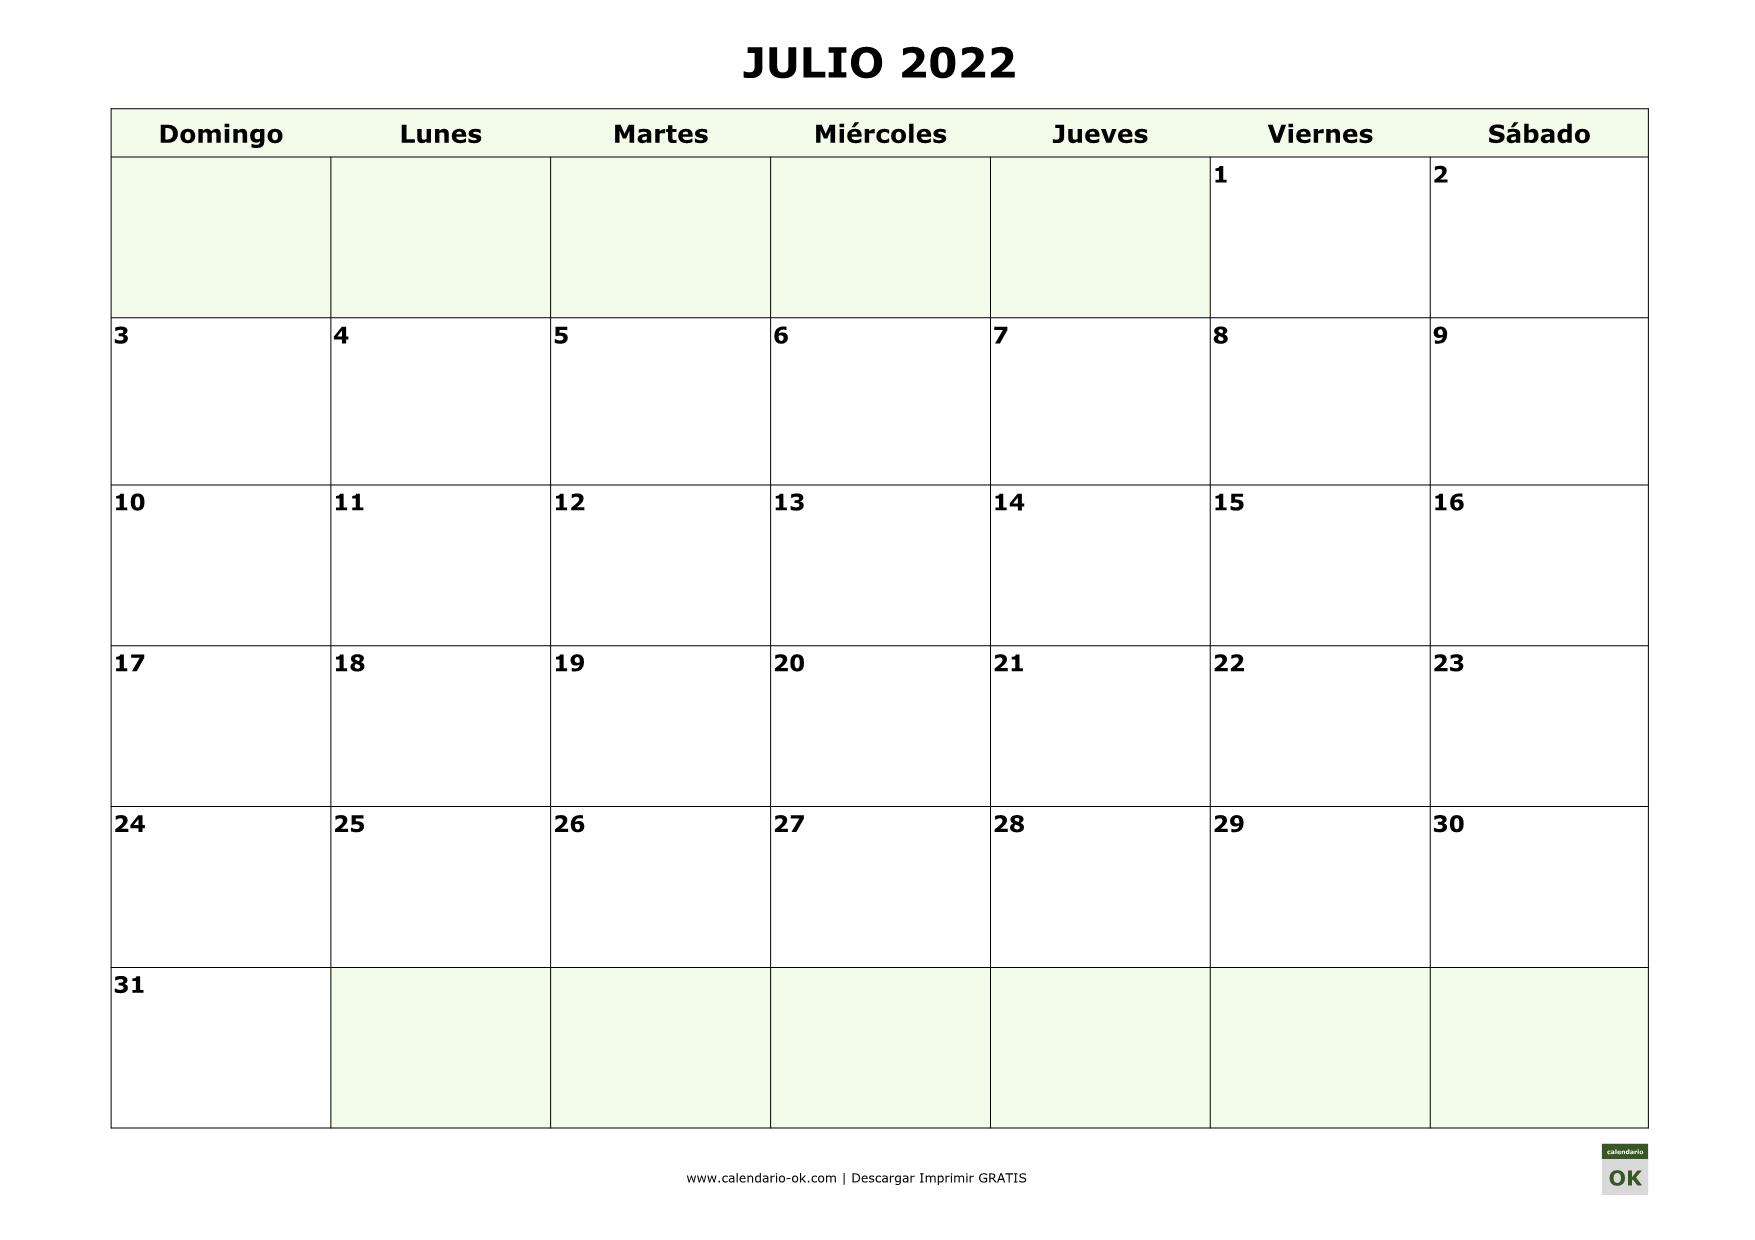 JULIO 2022 empieza por DOMINGO